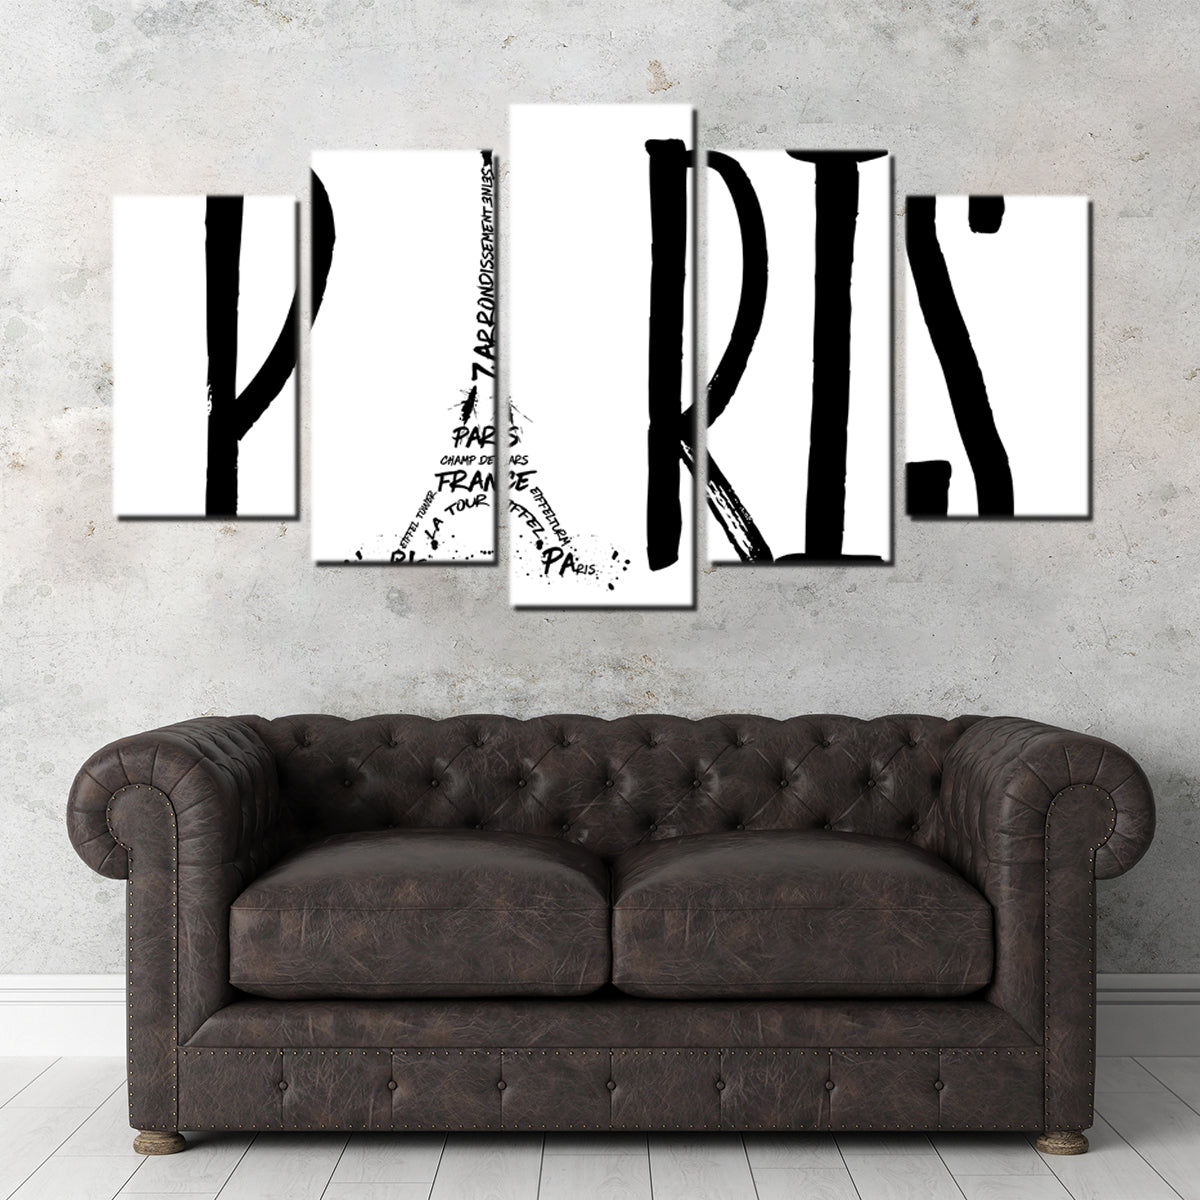 PARIS Typography